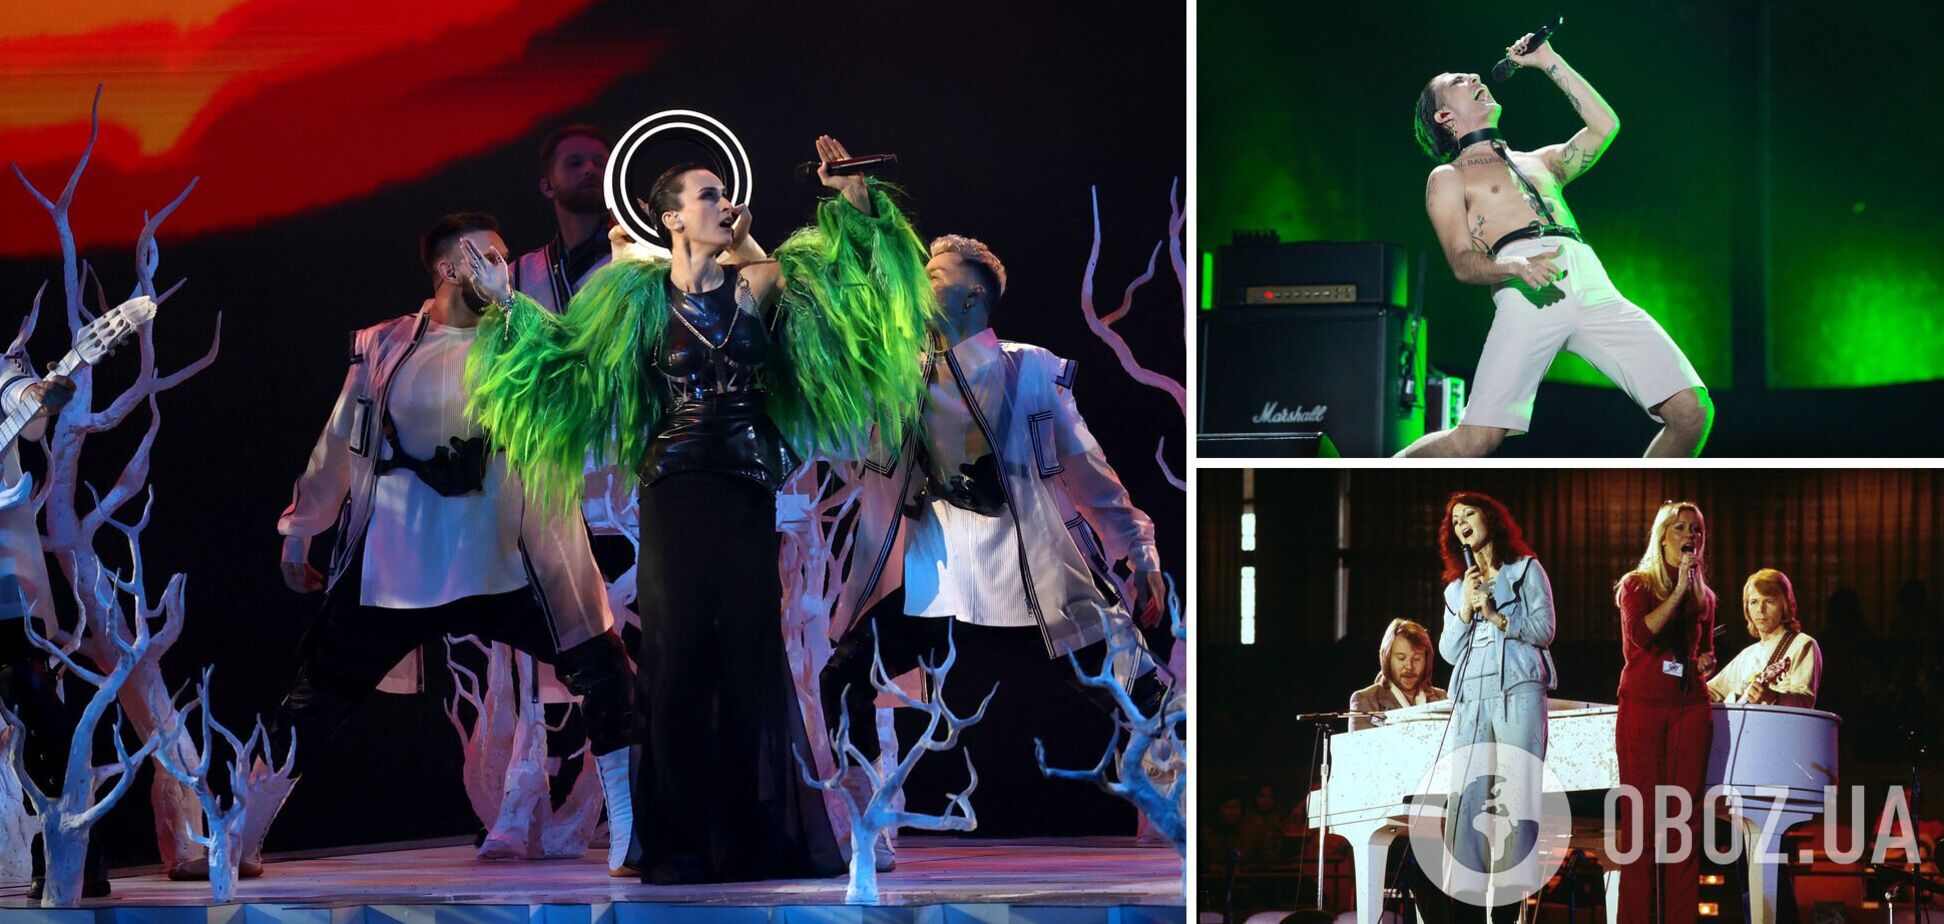 Пісня 'Шум' Go_A увійшла до топ-3 найпопулярніших пісень за всю історію Євробачення